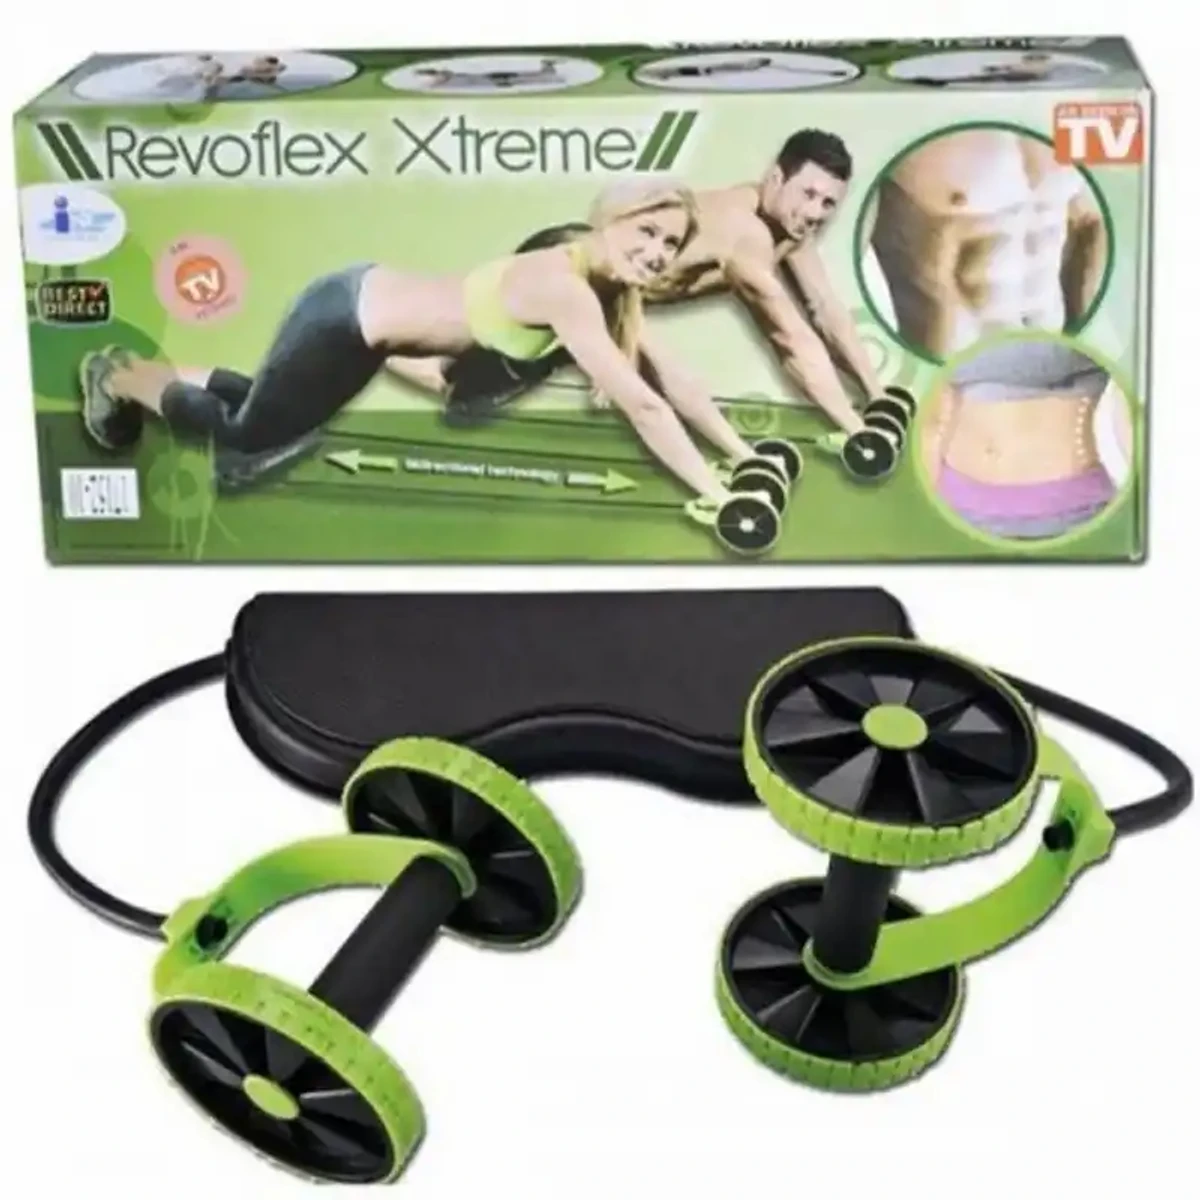 Revoflex xtreme workout set